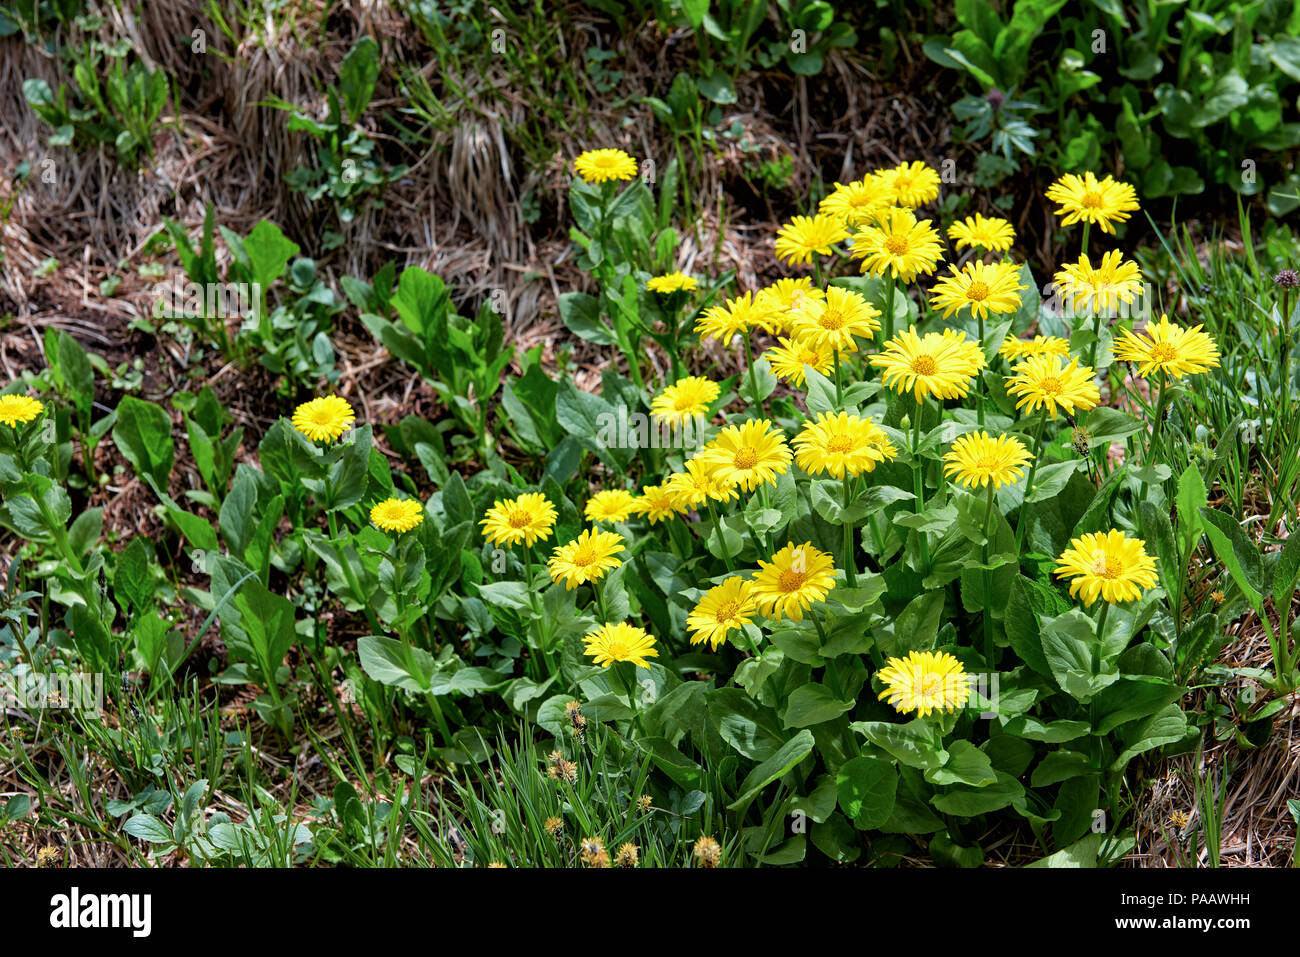 Maranta altaicum. Plante vivace sauvage avec de belles inflorescences jaune. Plante typique de montagne en Sibérie méridionale de la toundra Banque D'Images